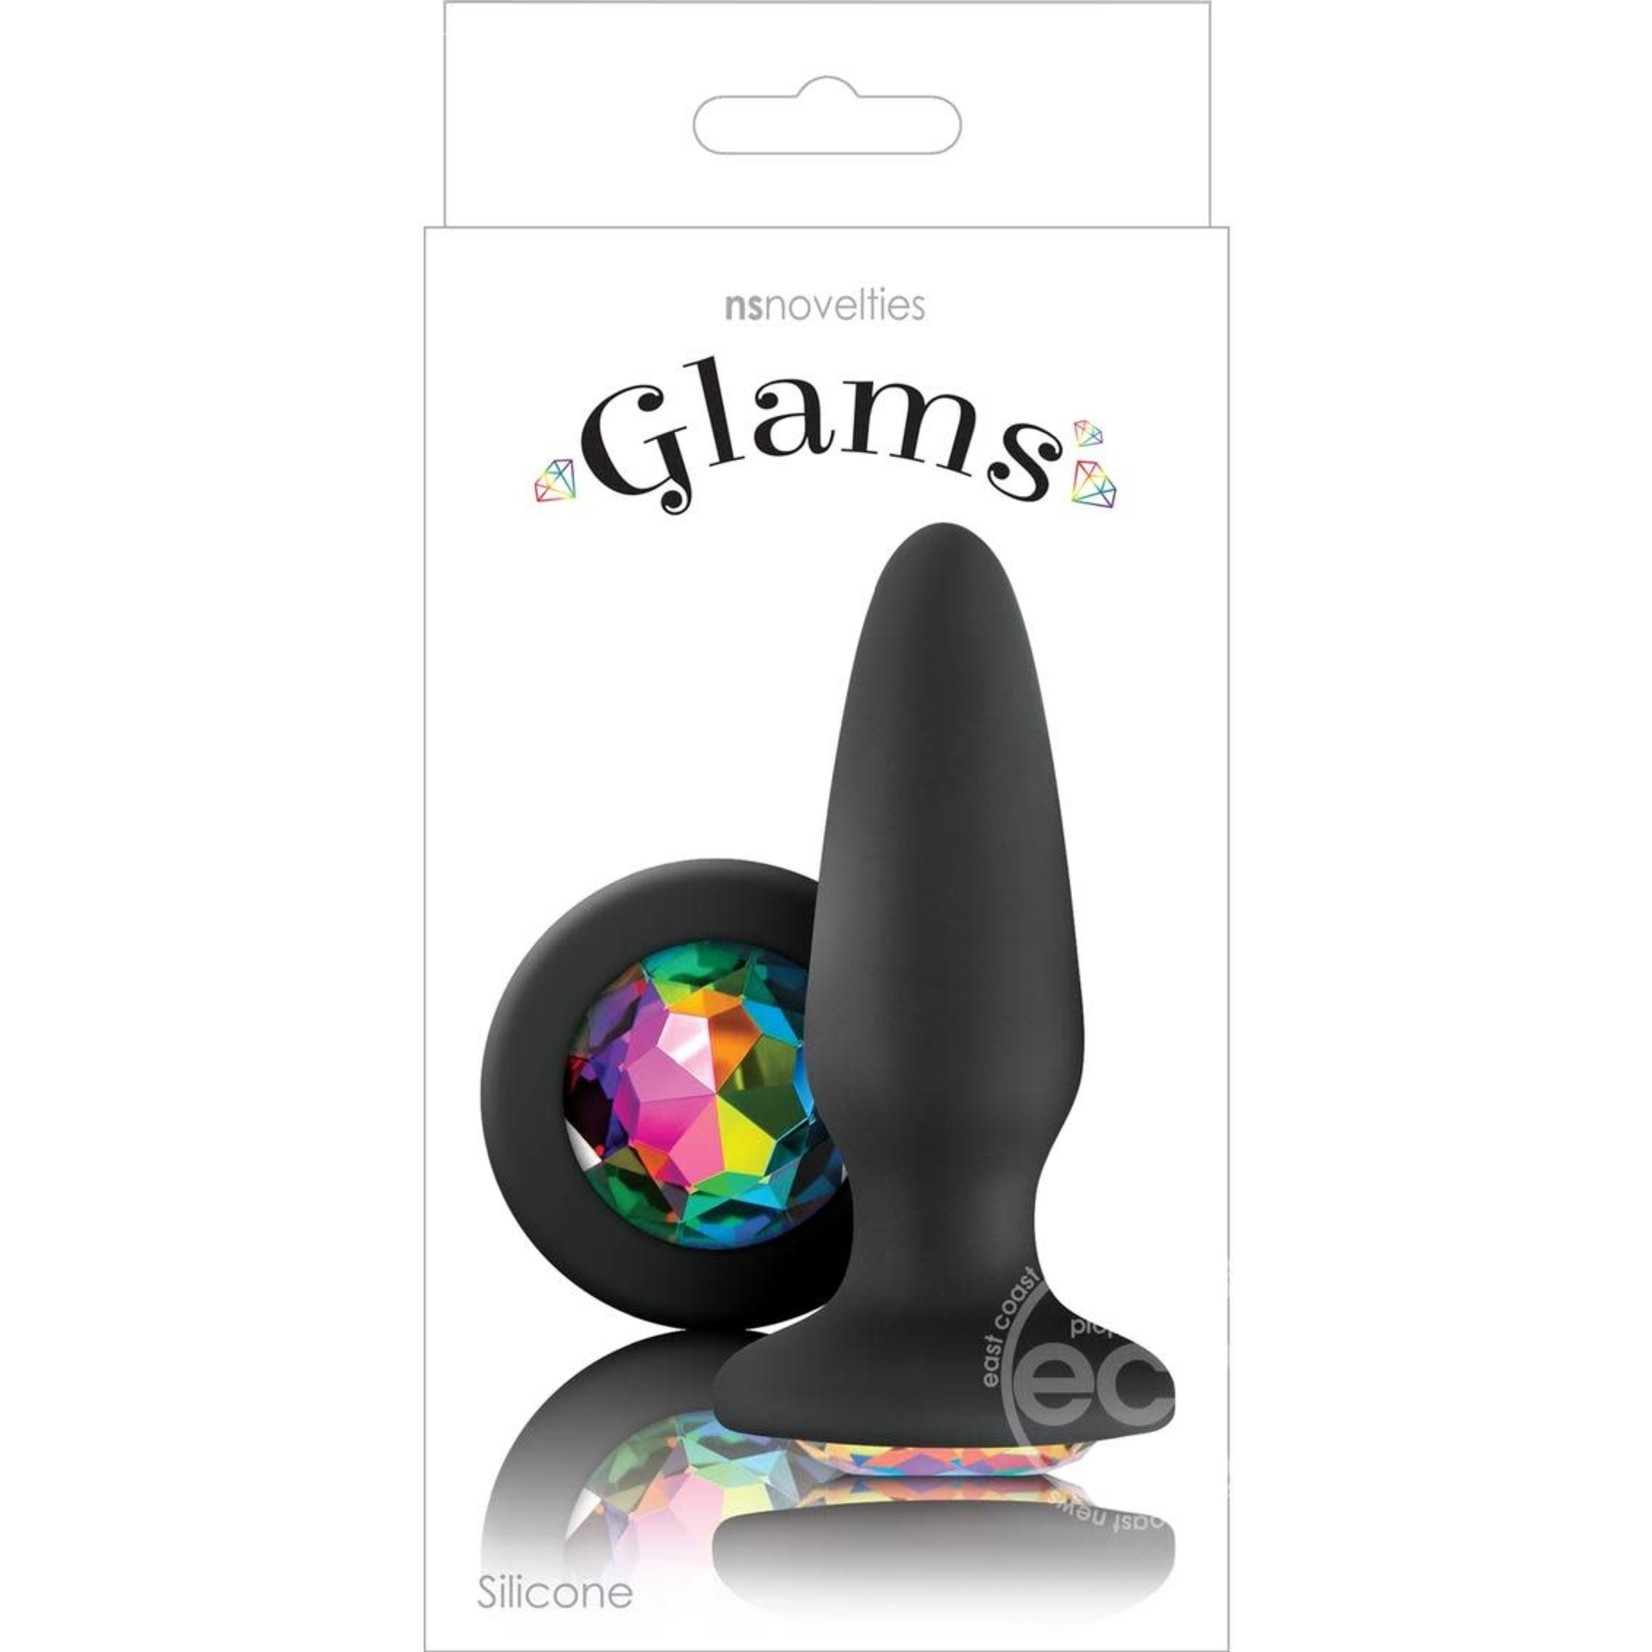 Glams Silicone Butt Plug - Black Rainbow Gem Large